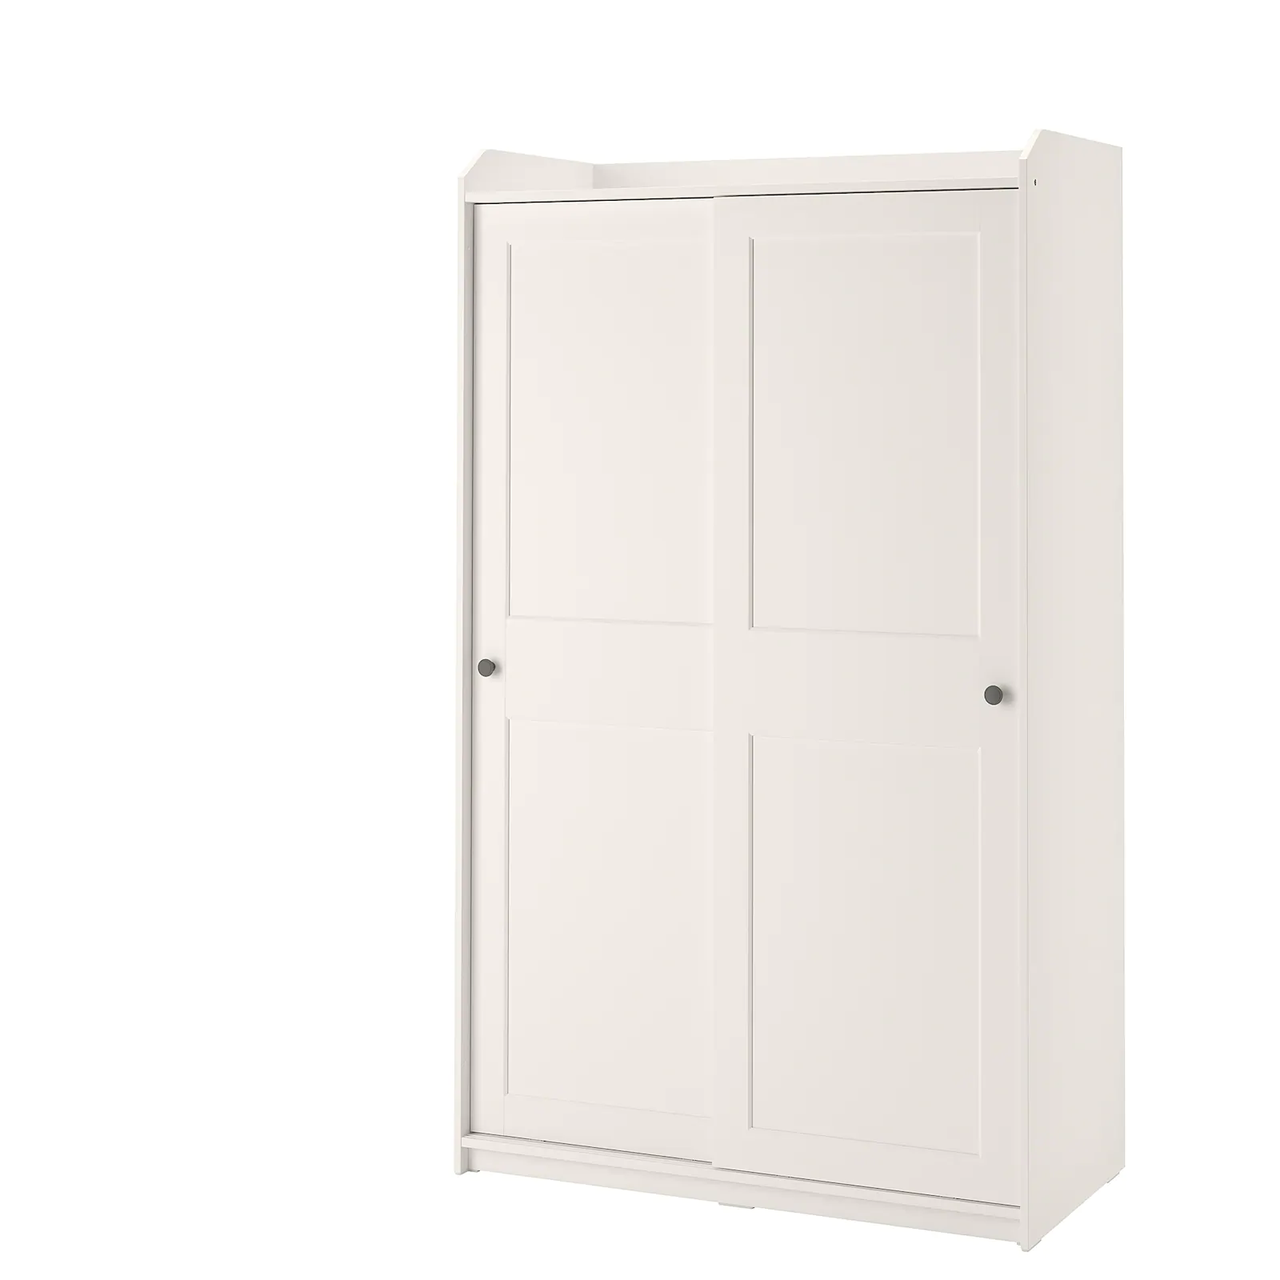 Гардероб с раздвижными дверями ХАУГА  белый118x55x199 см ИКЕА, IKEA